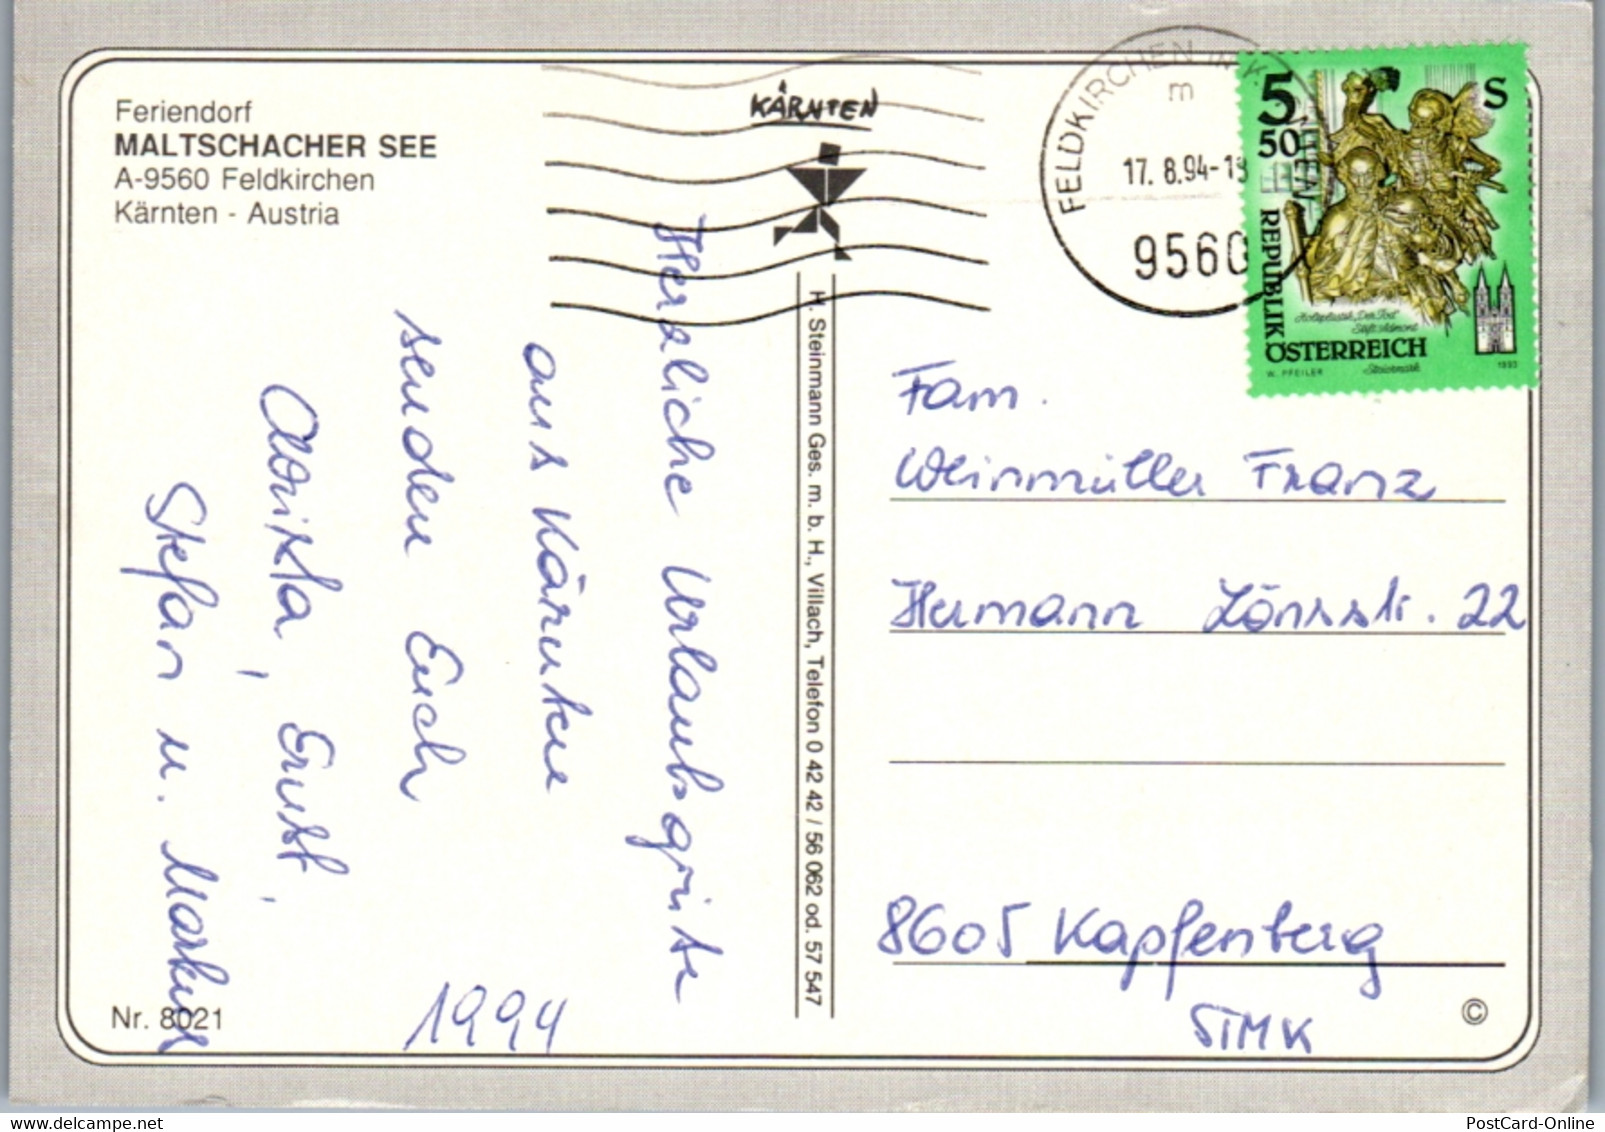 5700 - Kärnten - Feldkirchen , Maltschacher See , Feriendorf - Gelaufen 1994 - Feldkirchen In Kärnten